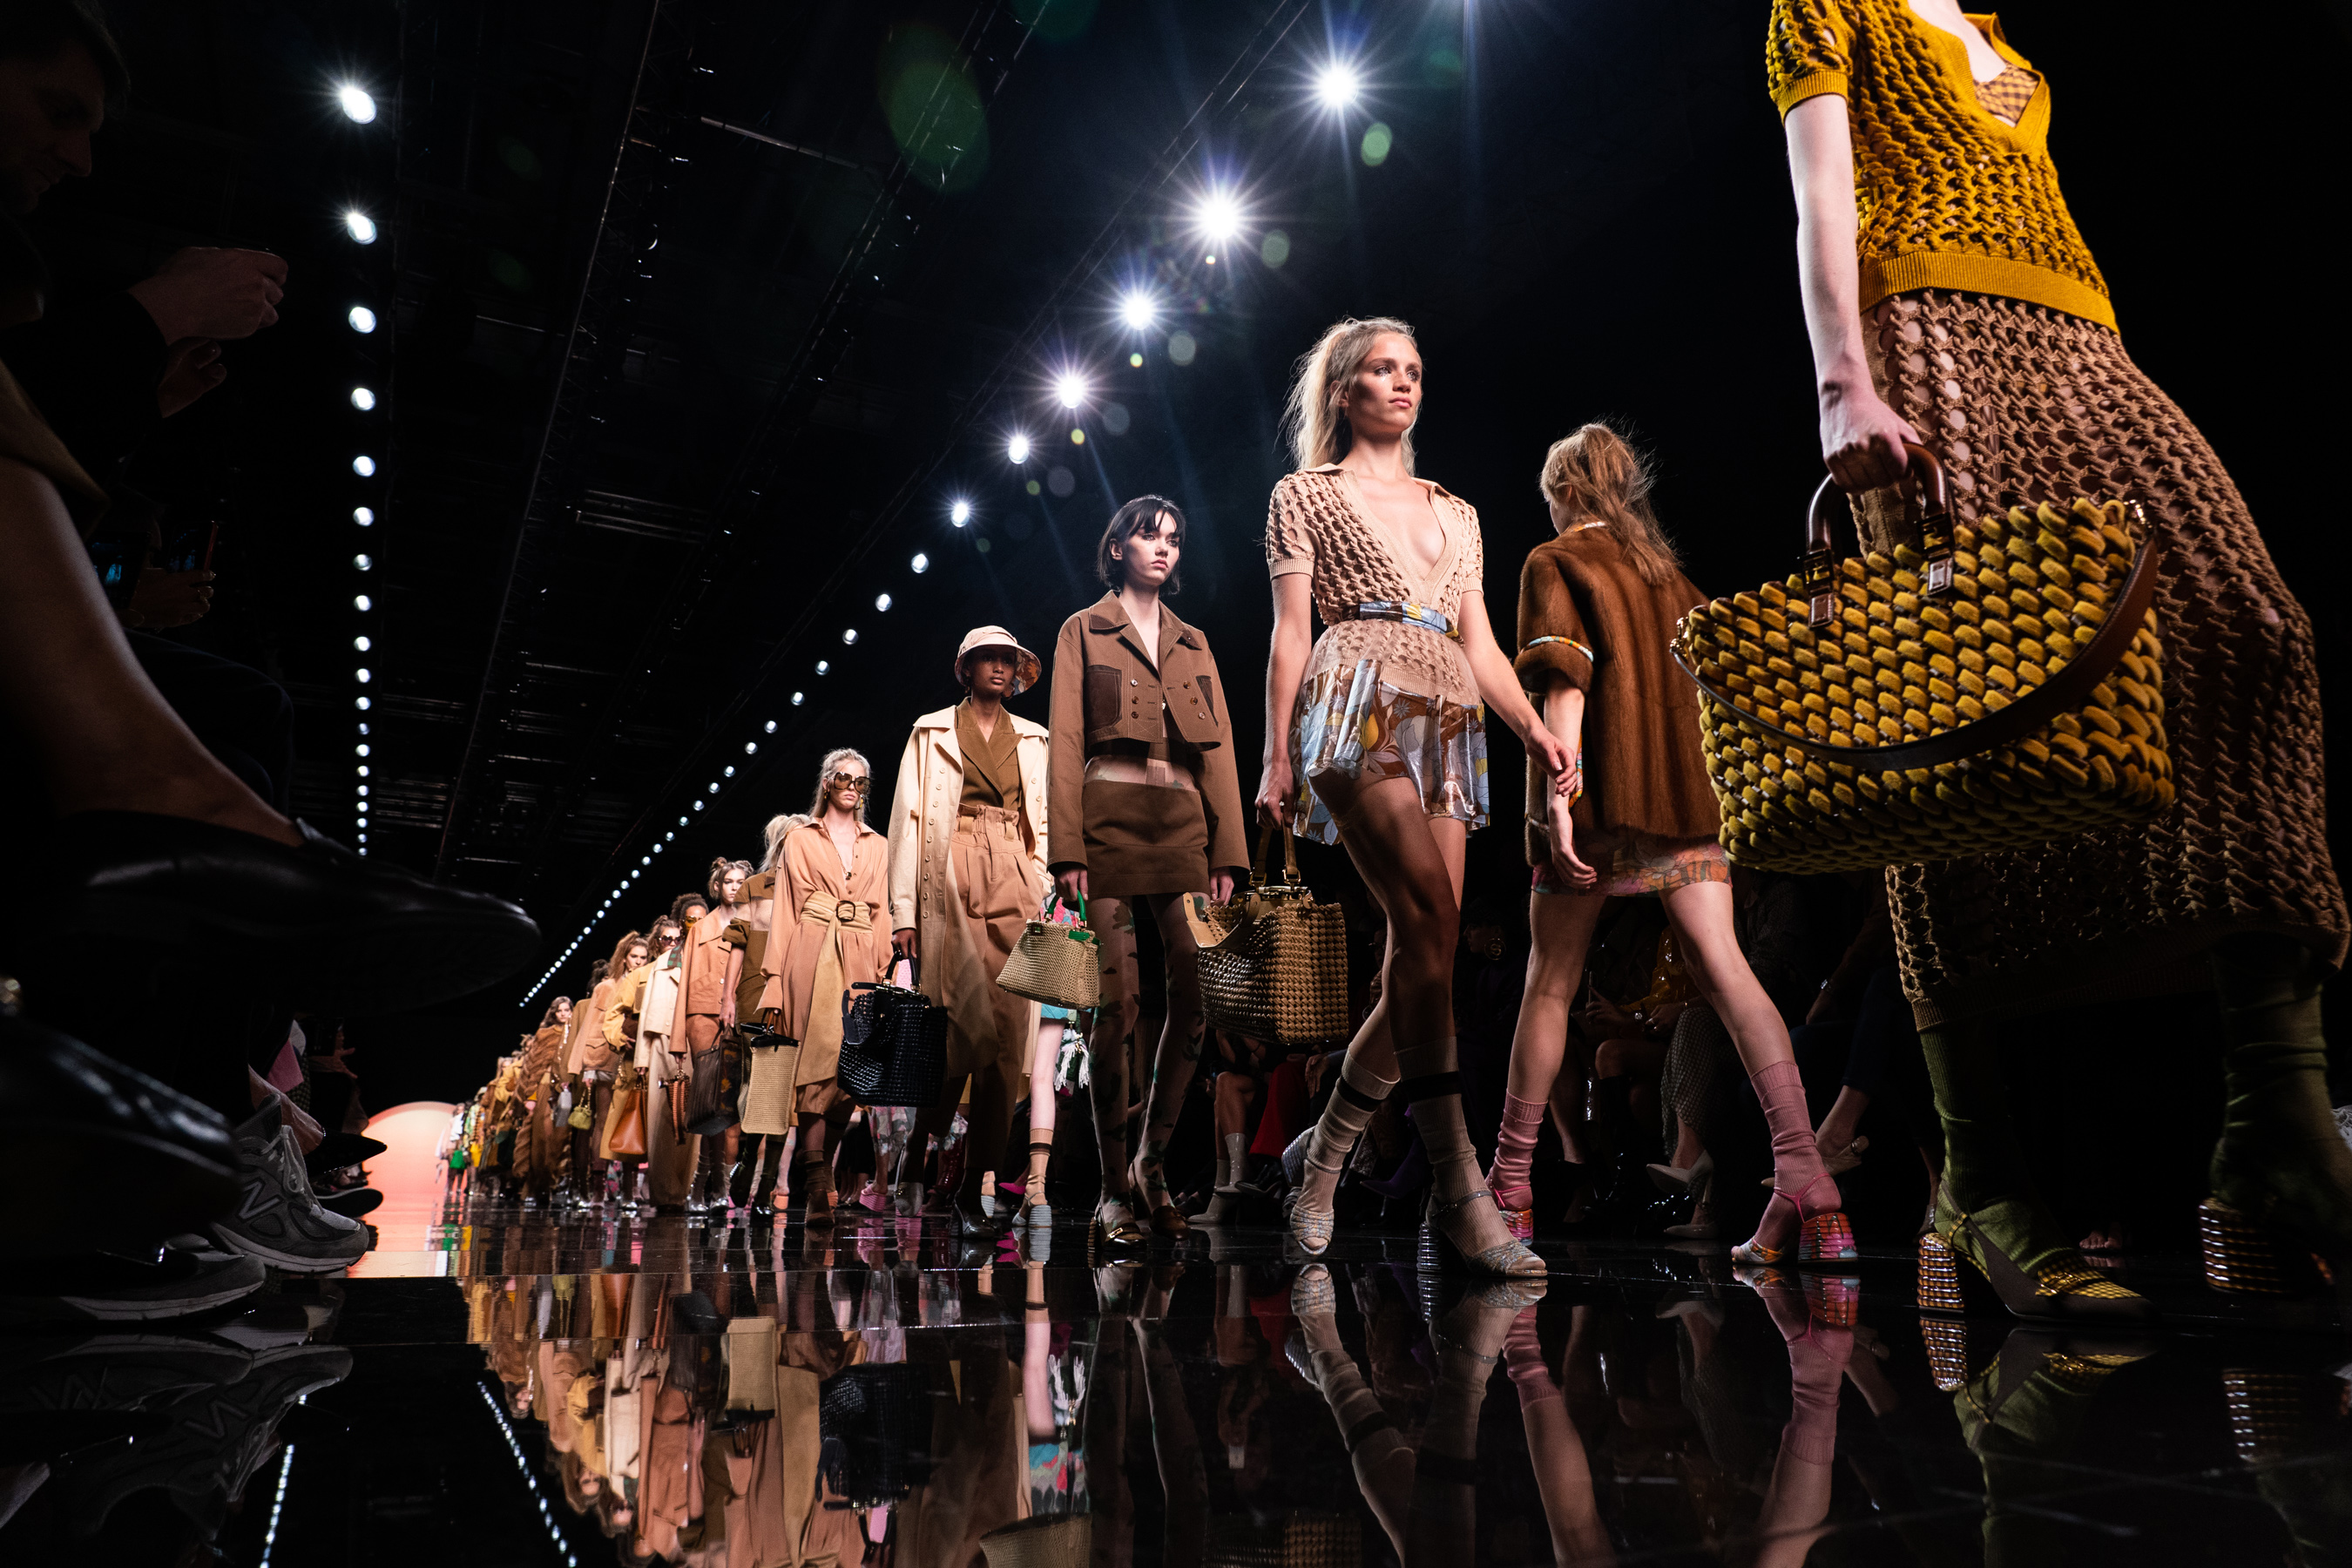 Модель на неделю моды. Показ мод в Милане 2020. Показ Dolce Gabbana 2021.